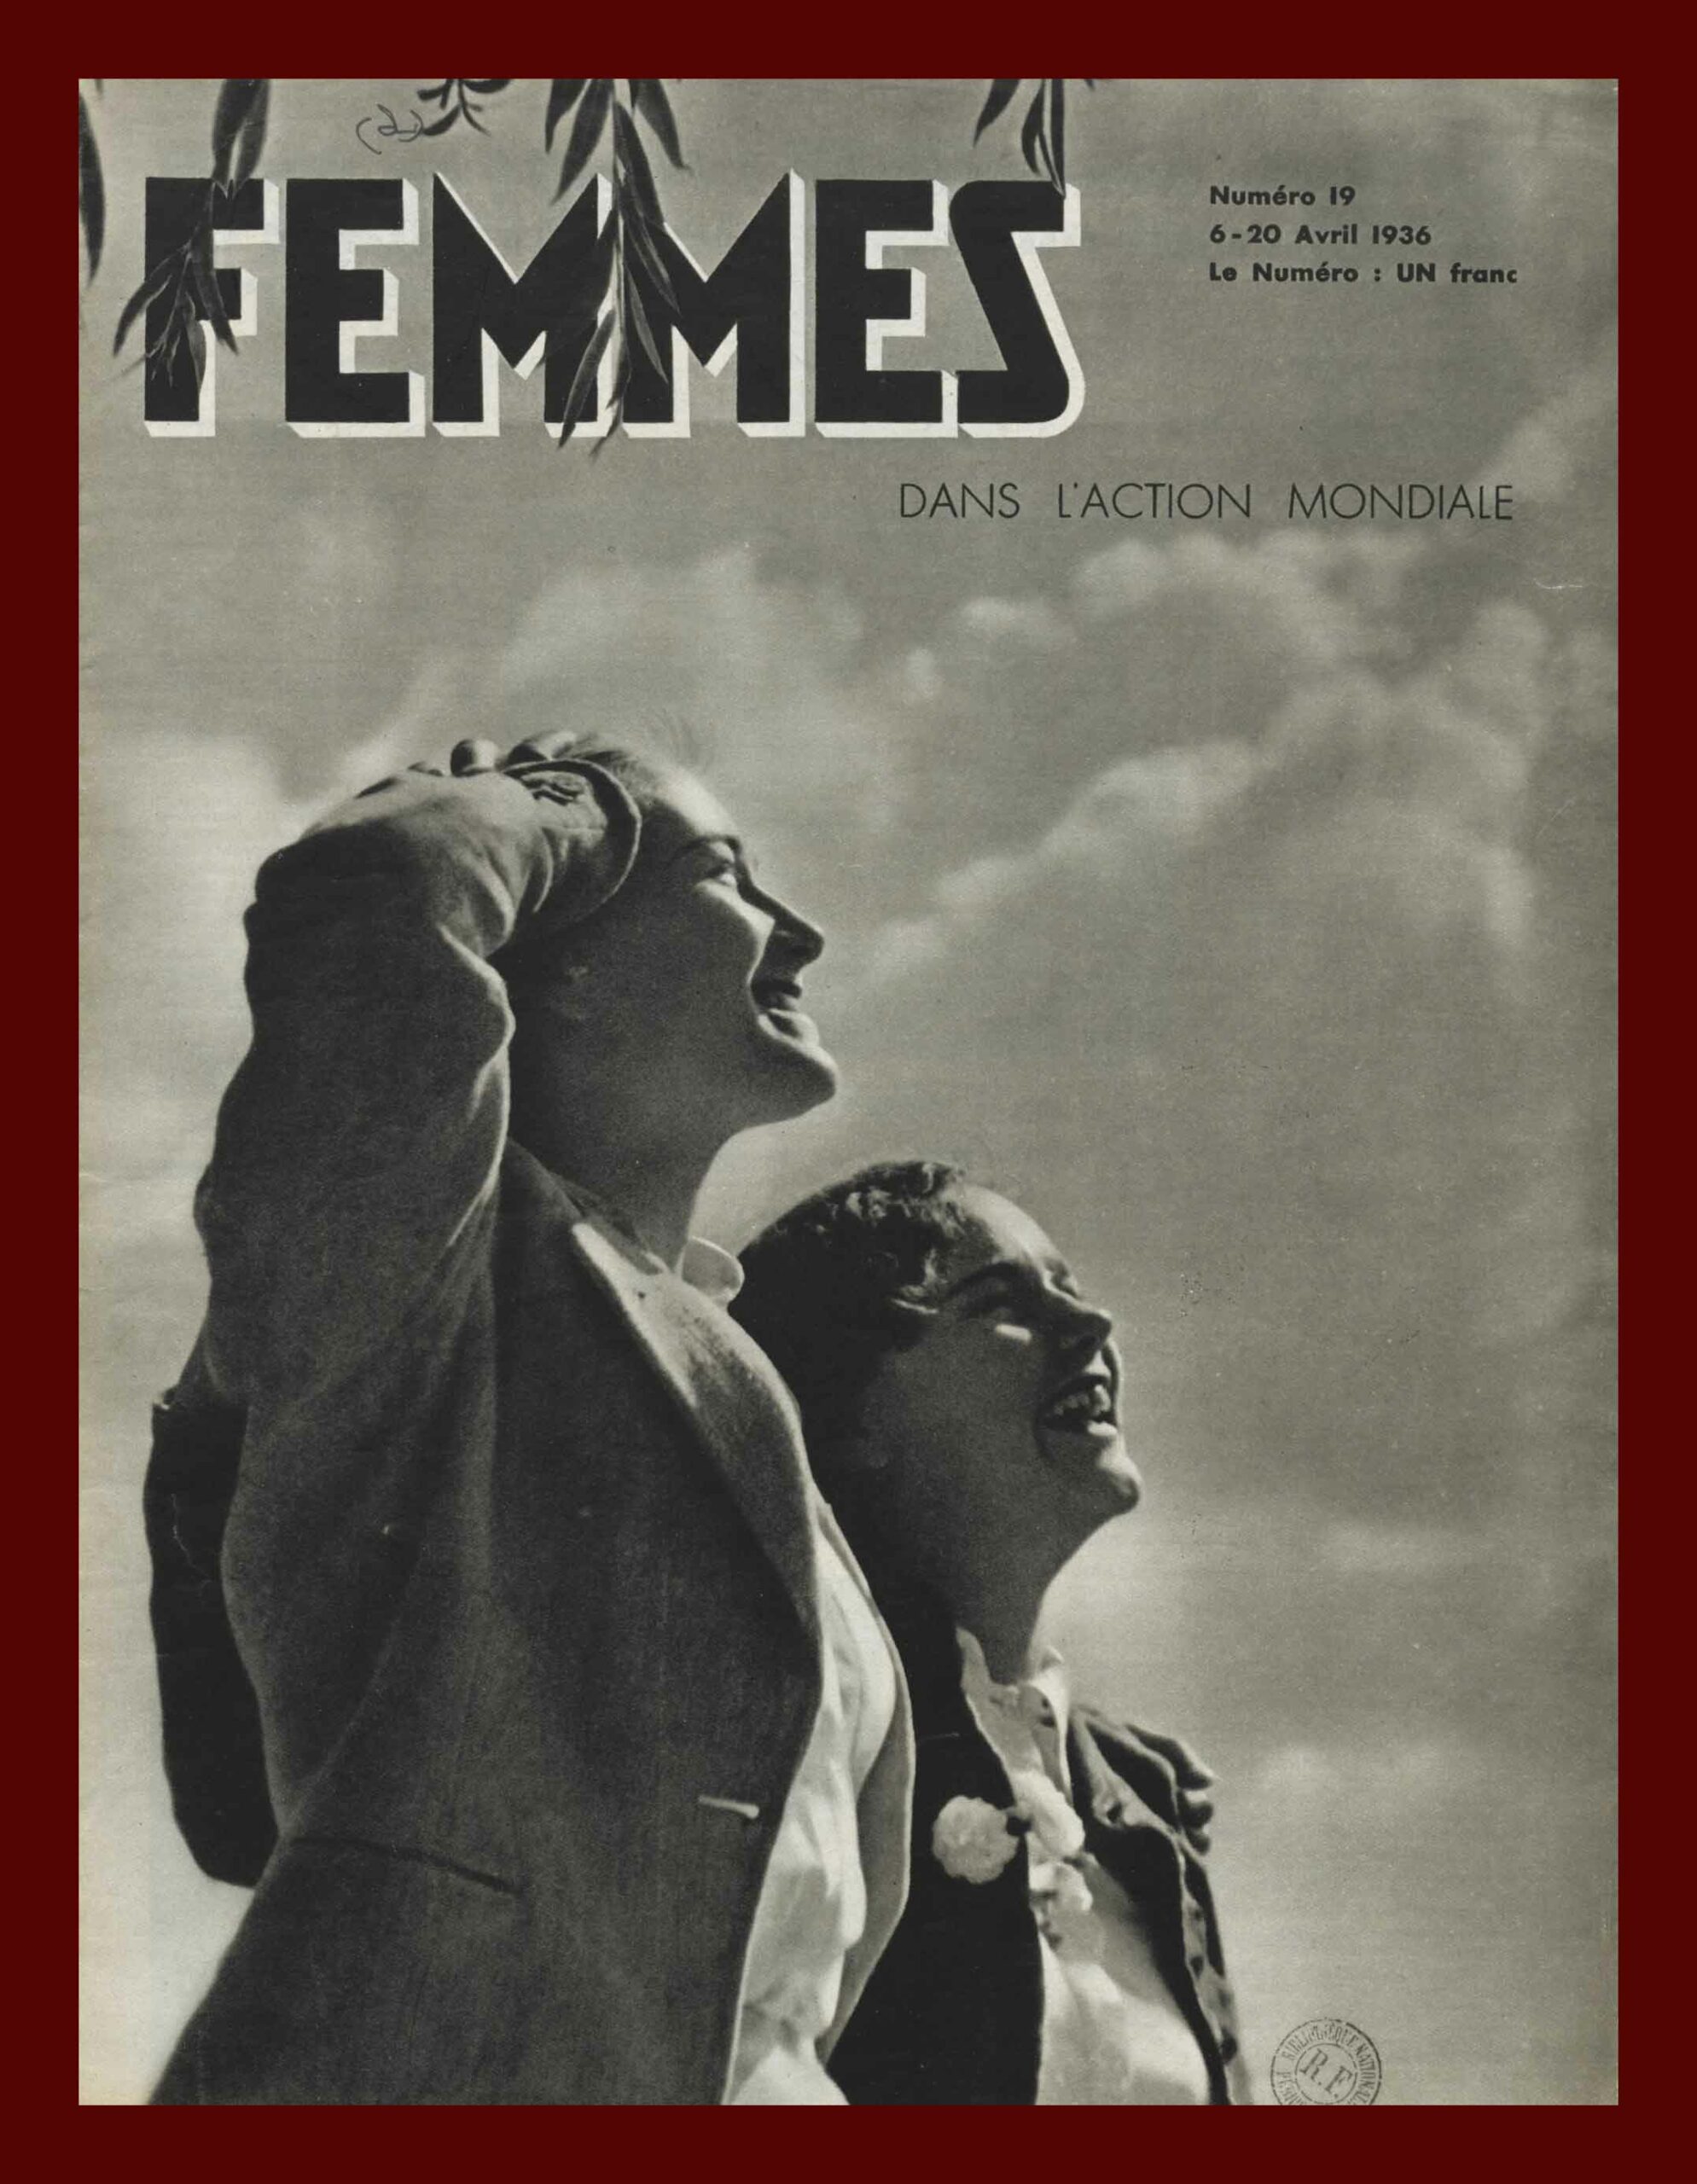 “Femmes dans l’action mondiale”, 6 aprile 1936